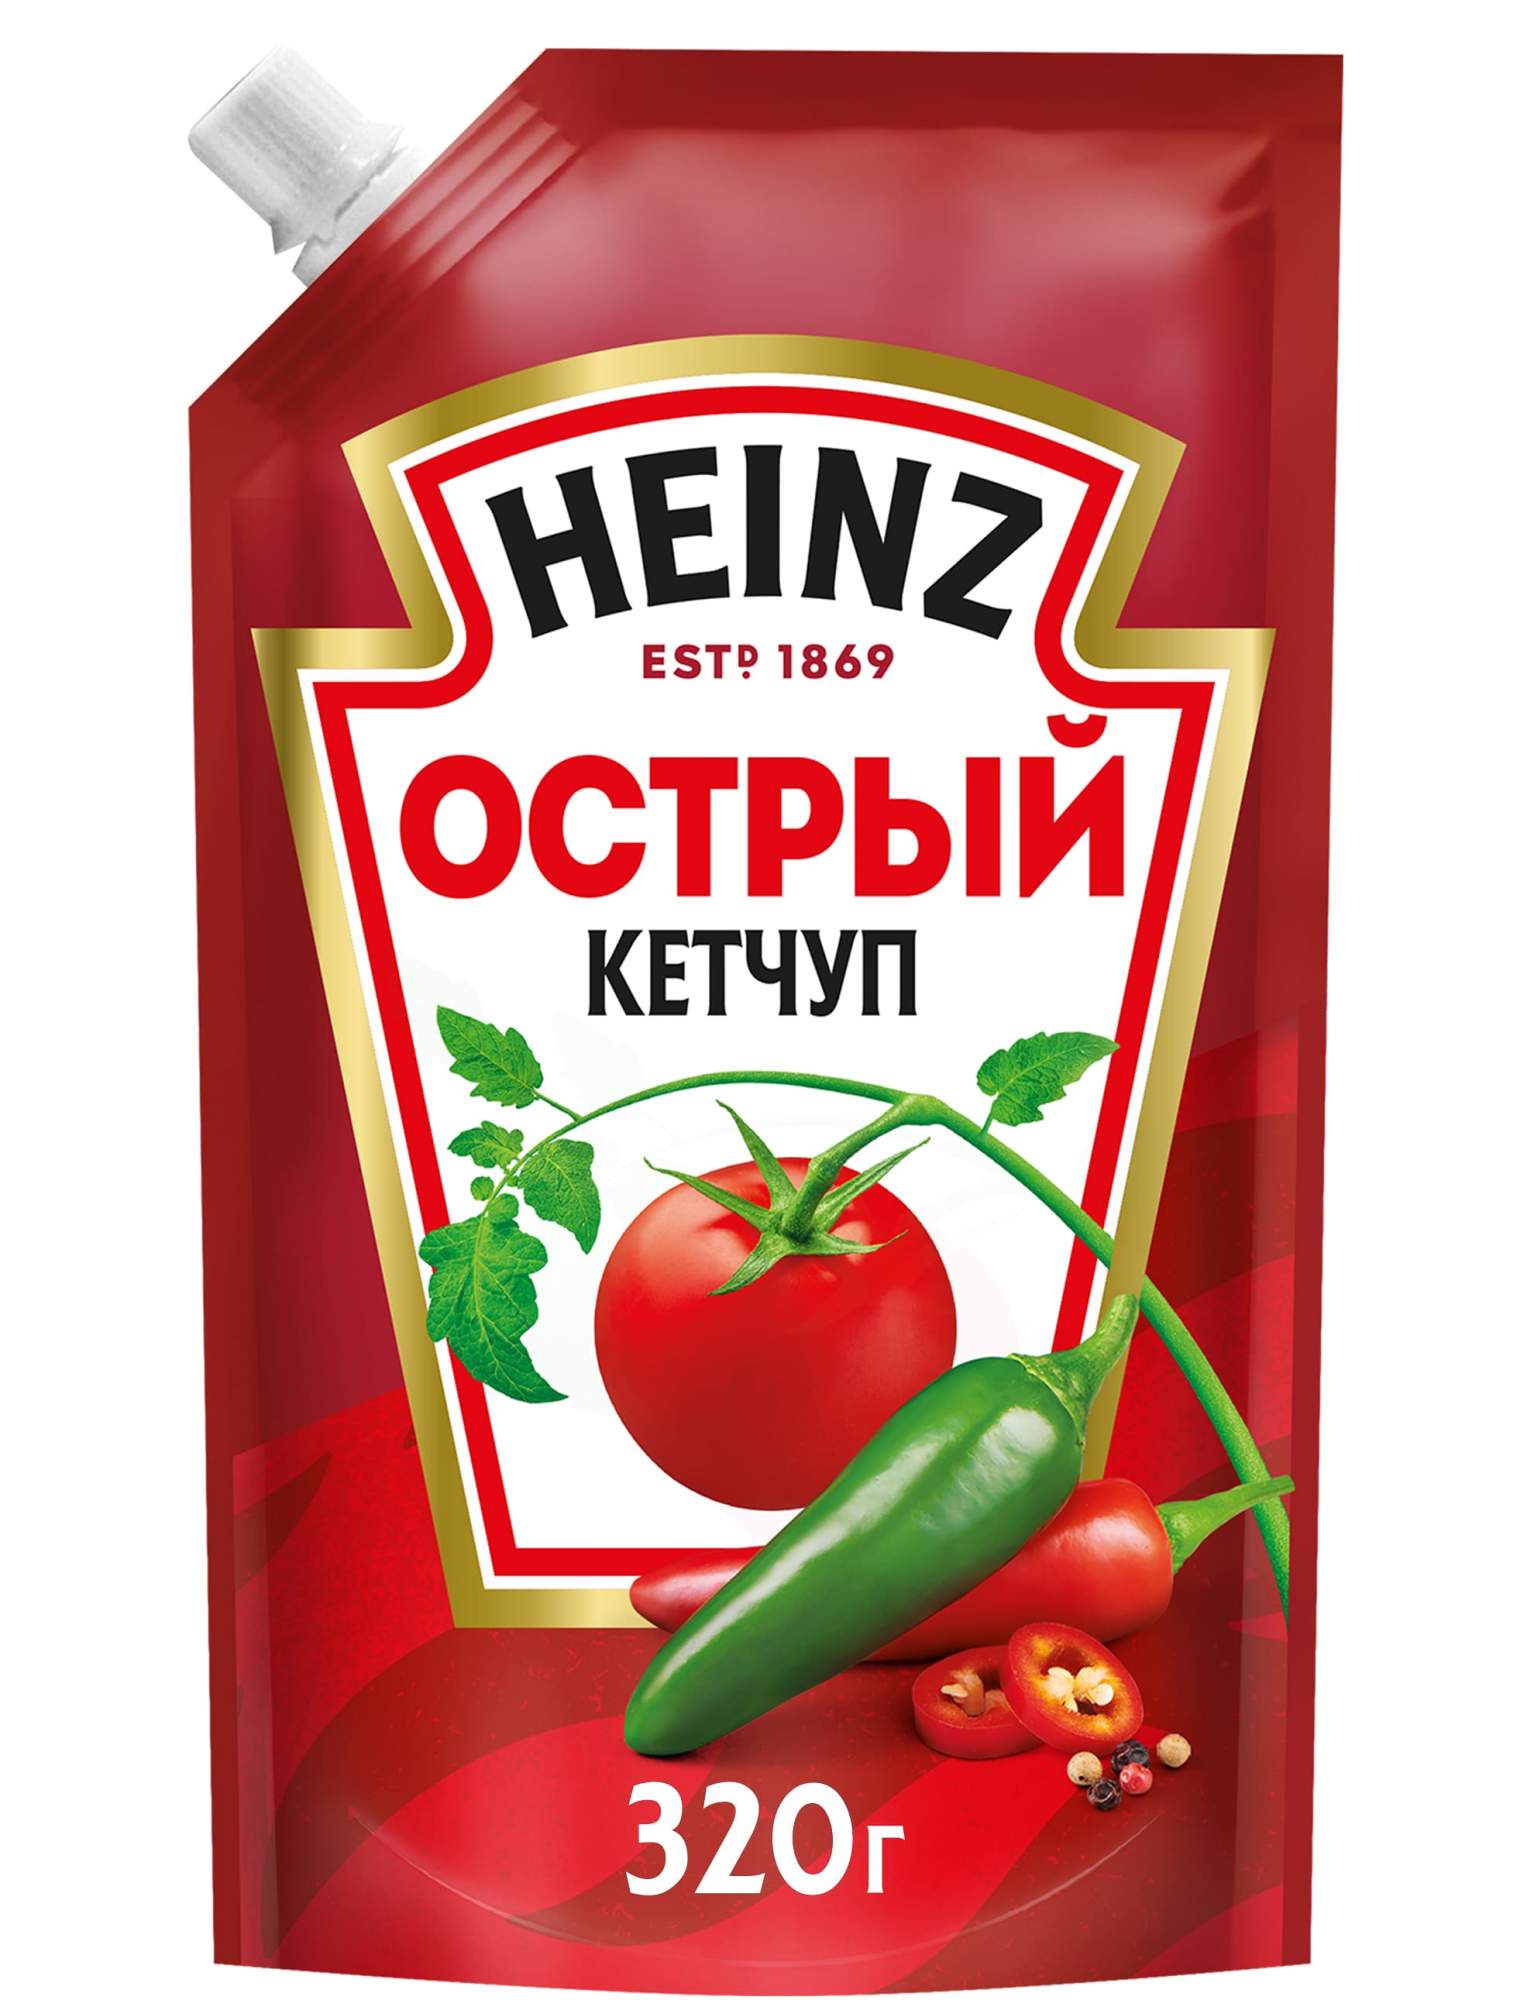 Кетчуп Heinz Острый 320г - купить в Мегамаркет Владивосток, цена на Мегамаркет